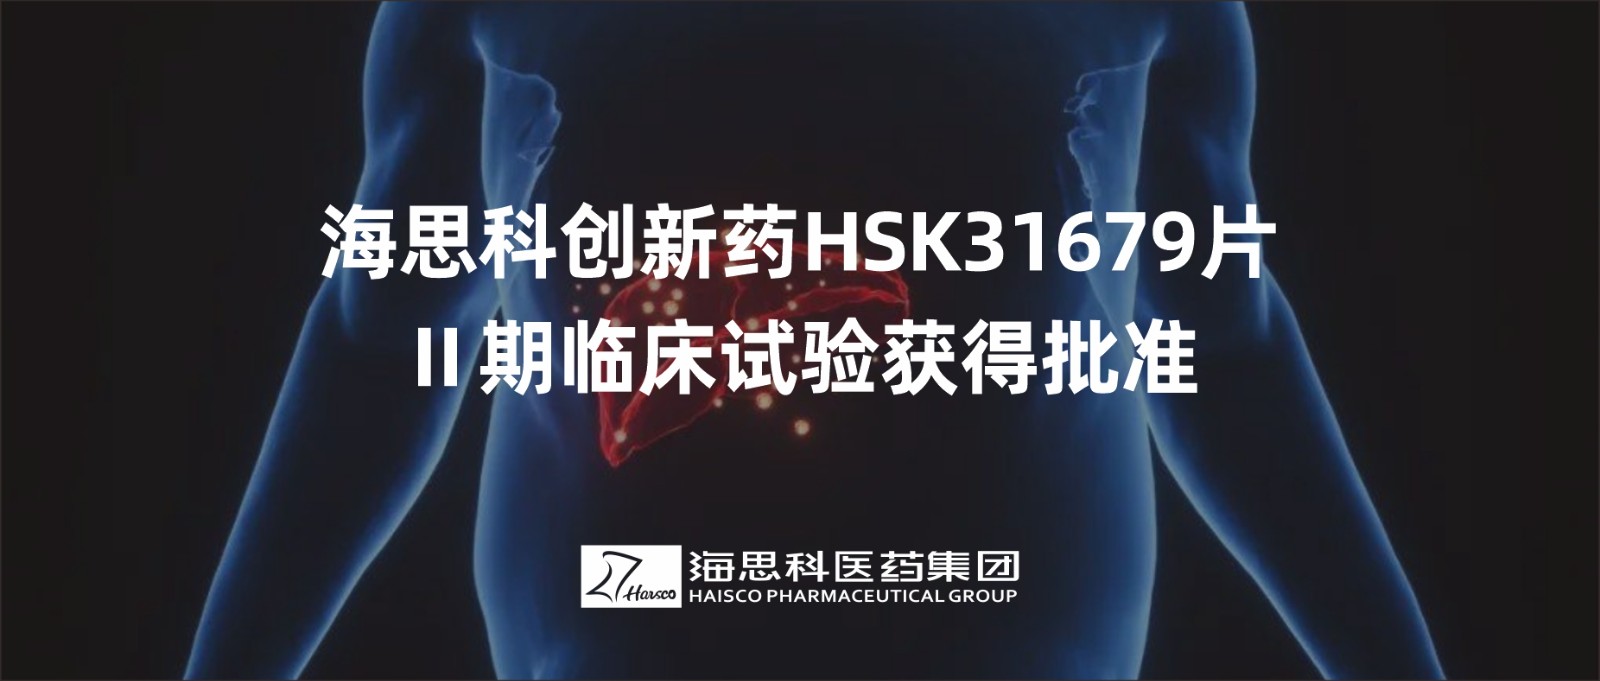 恒峰官网g22创新药HSK31679片Ⅱ期临床试验获得批准